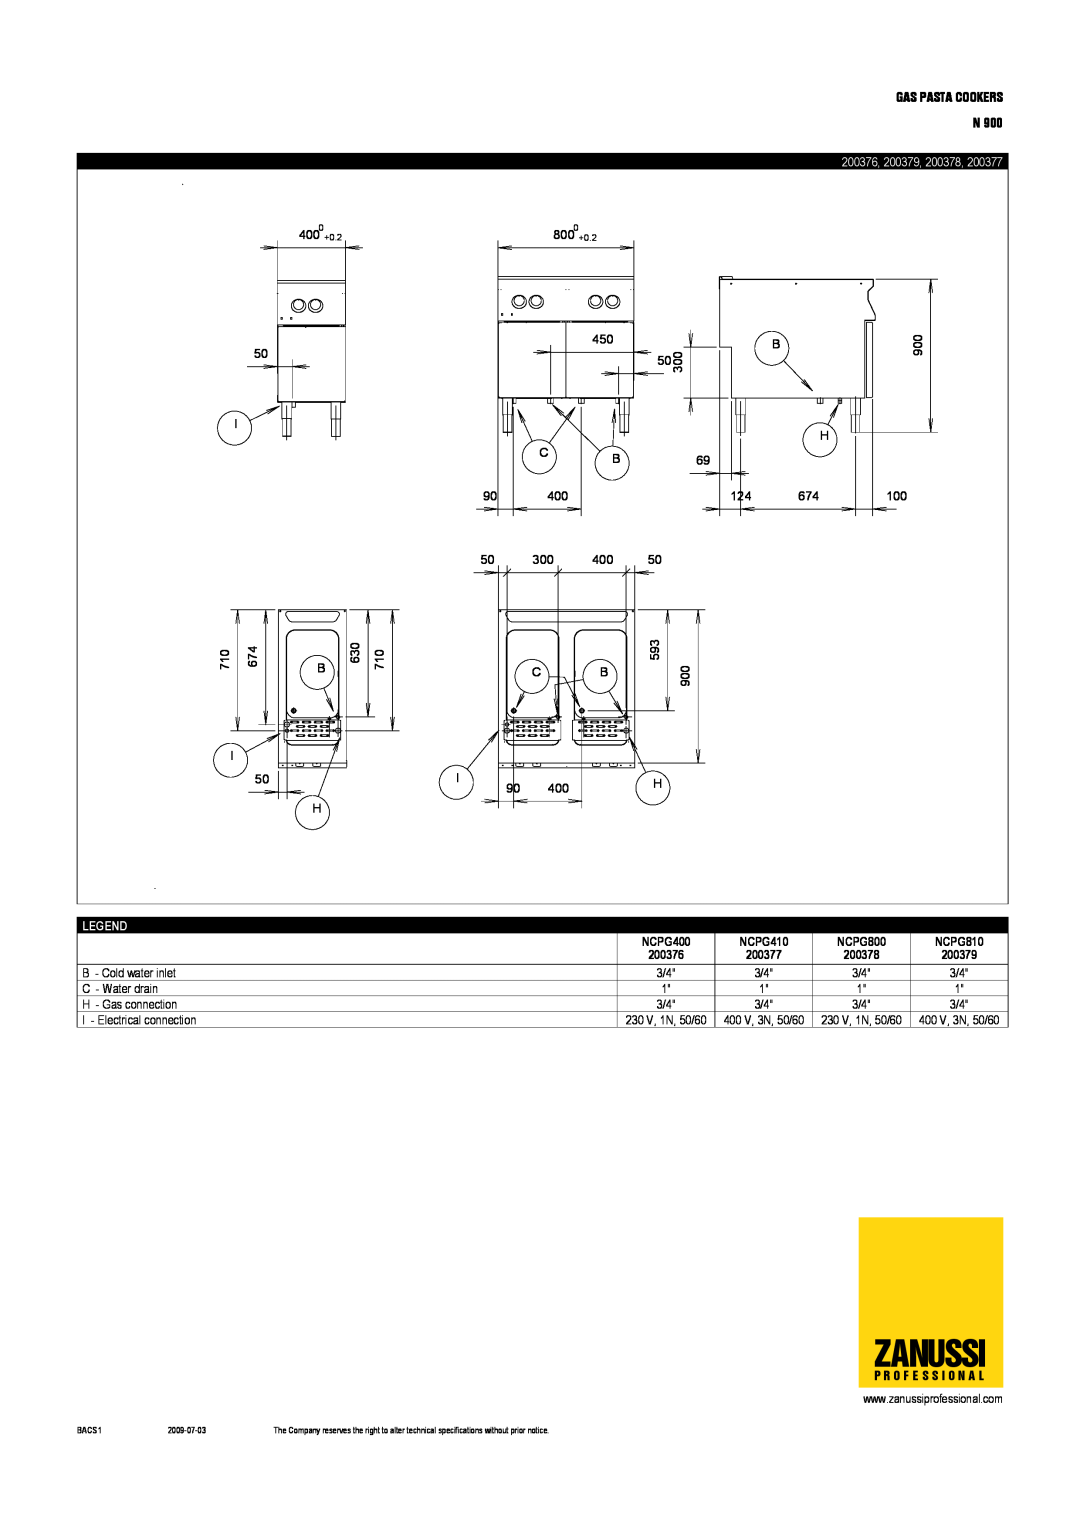 Electrolux NCPG810, NCPG400, NCPG800, NCPG410 dimensions Zanussi, 200376 